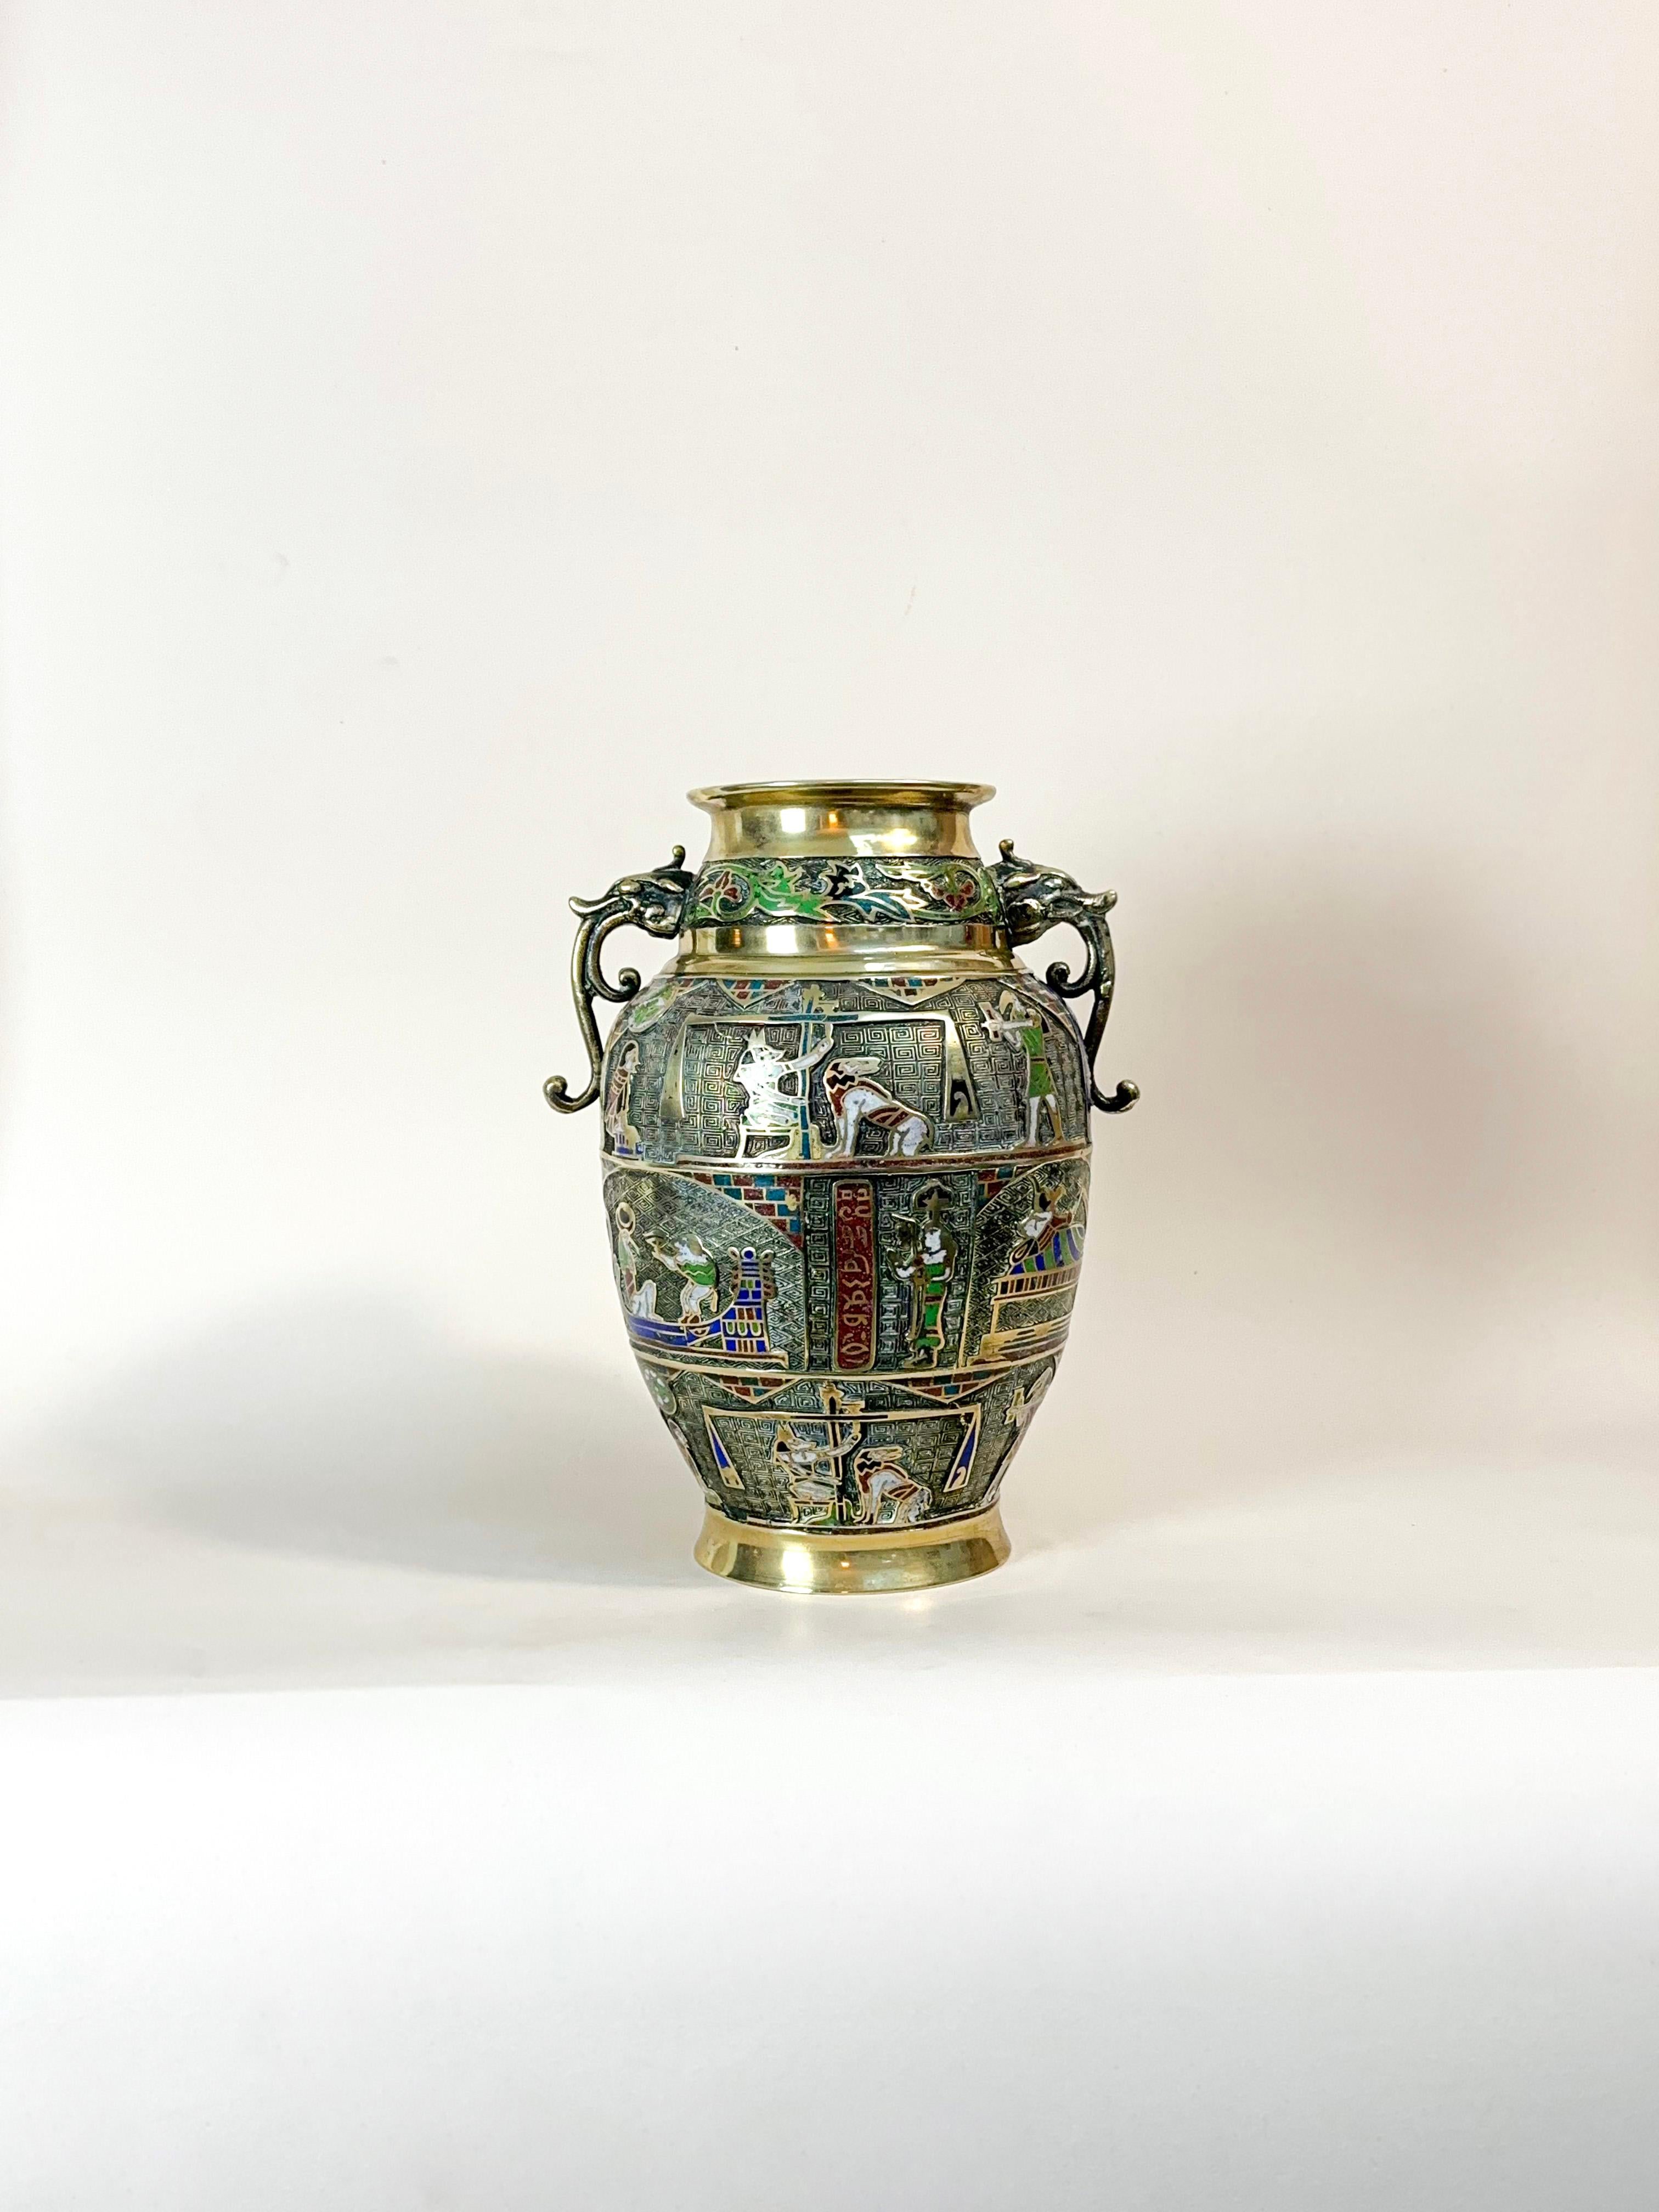 Große Champlevé-Vase aus der Zeit des Art déco.

Urnenförmige Messingvase aus den 1920er Jahren, verziert mit ägyptischen Motiven und Szenen in Champlevé-Technik, mit stilisierten Drachenhenkeln und einer lebhaften Emailleoberfläche.

Wichtige